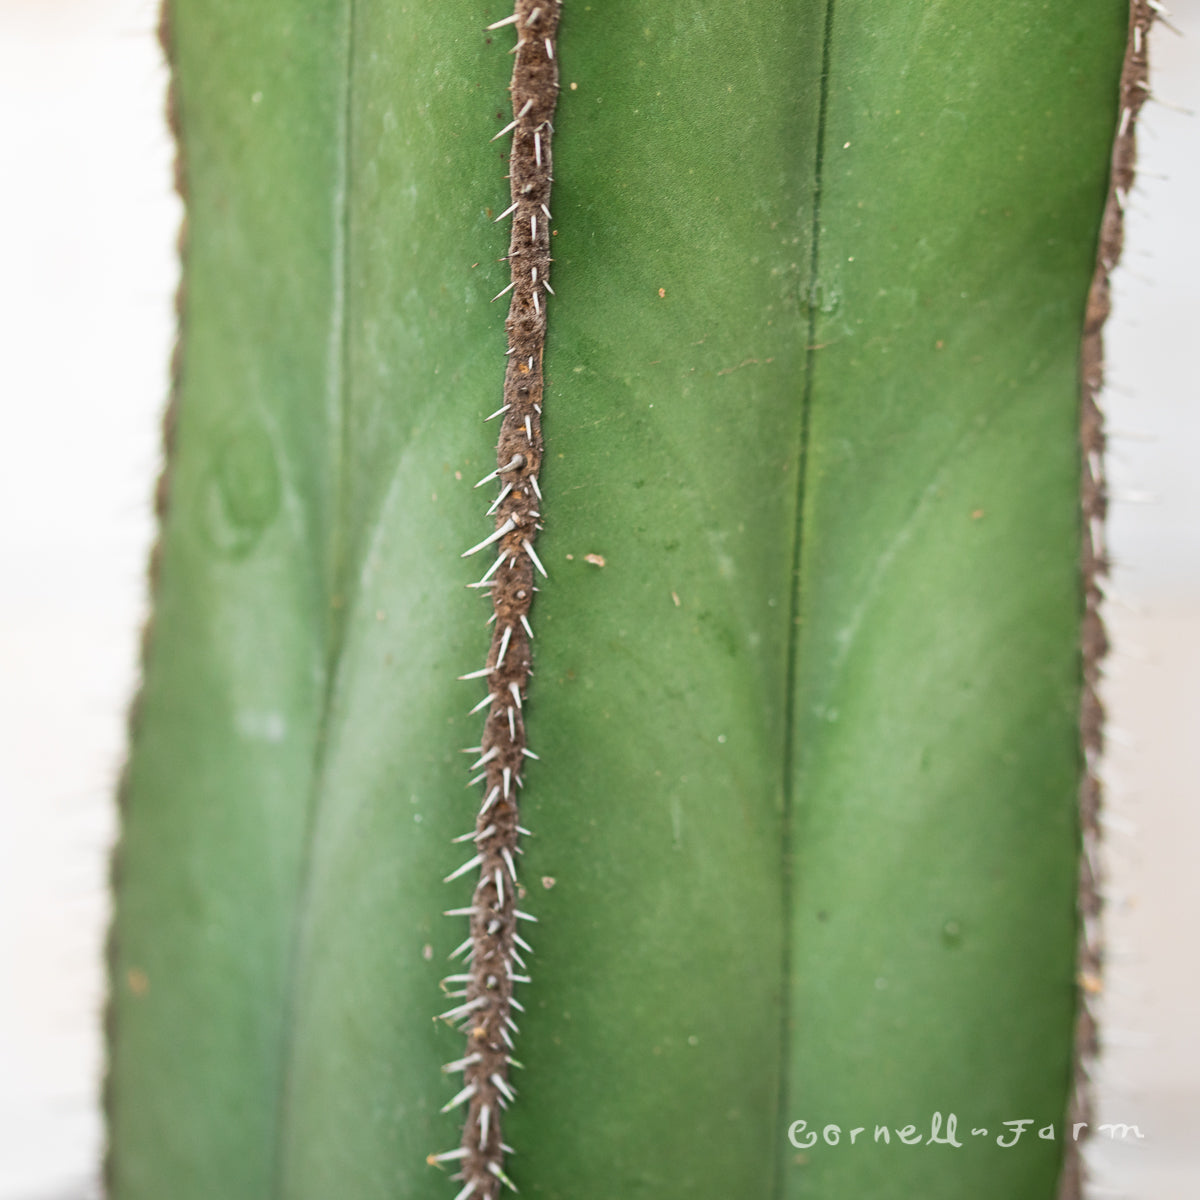 Lophocereus marginatus 10in Mexican Fence Post Cactus Pachycereus